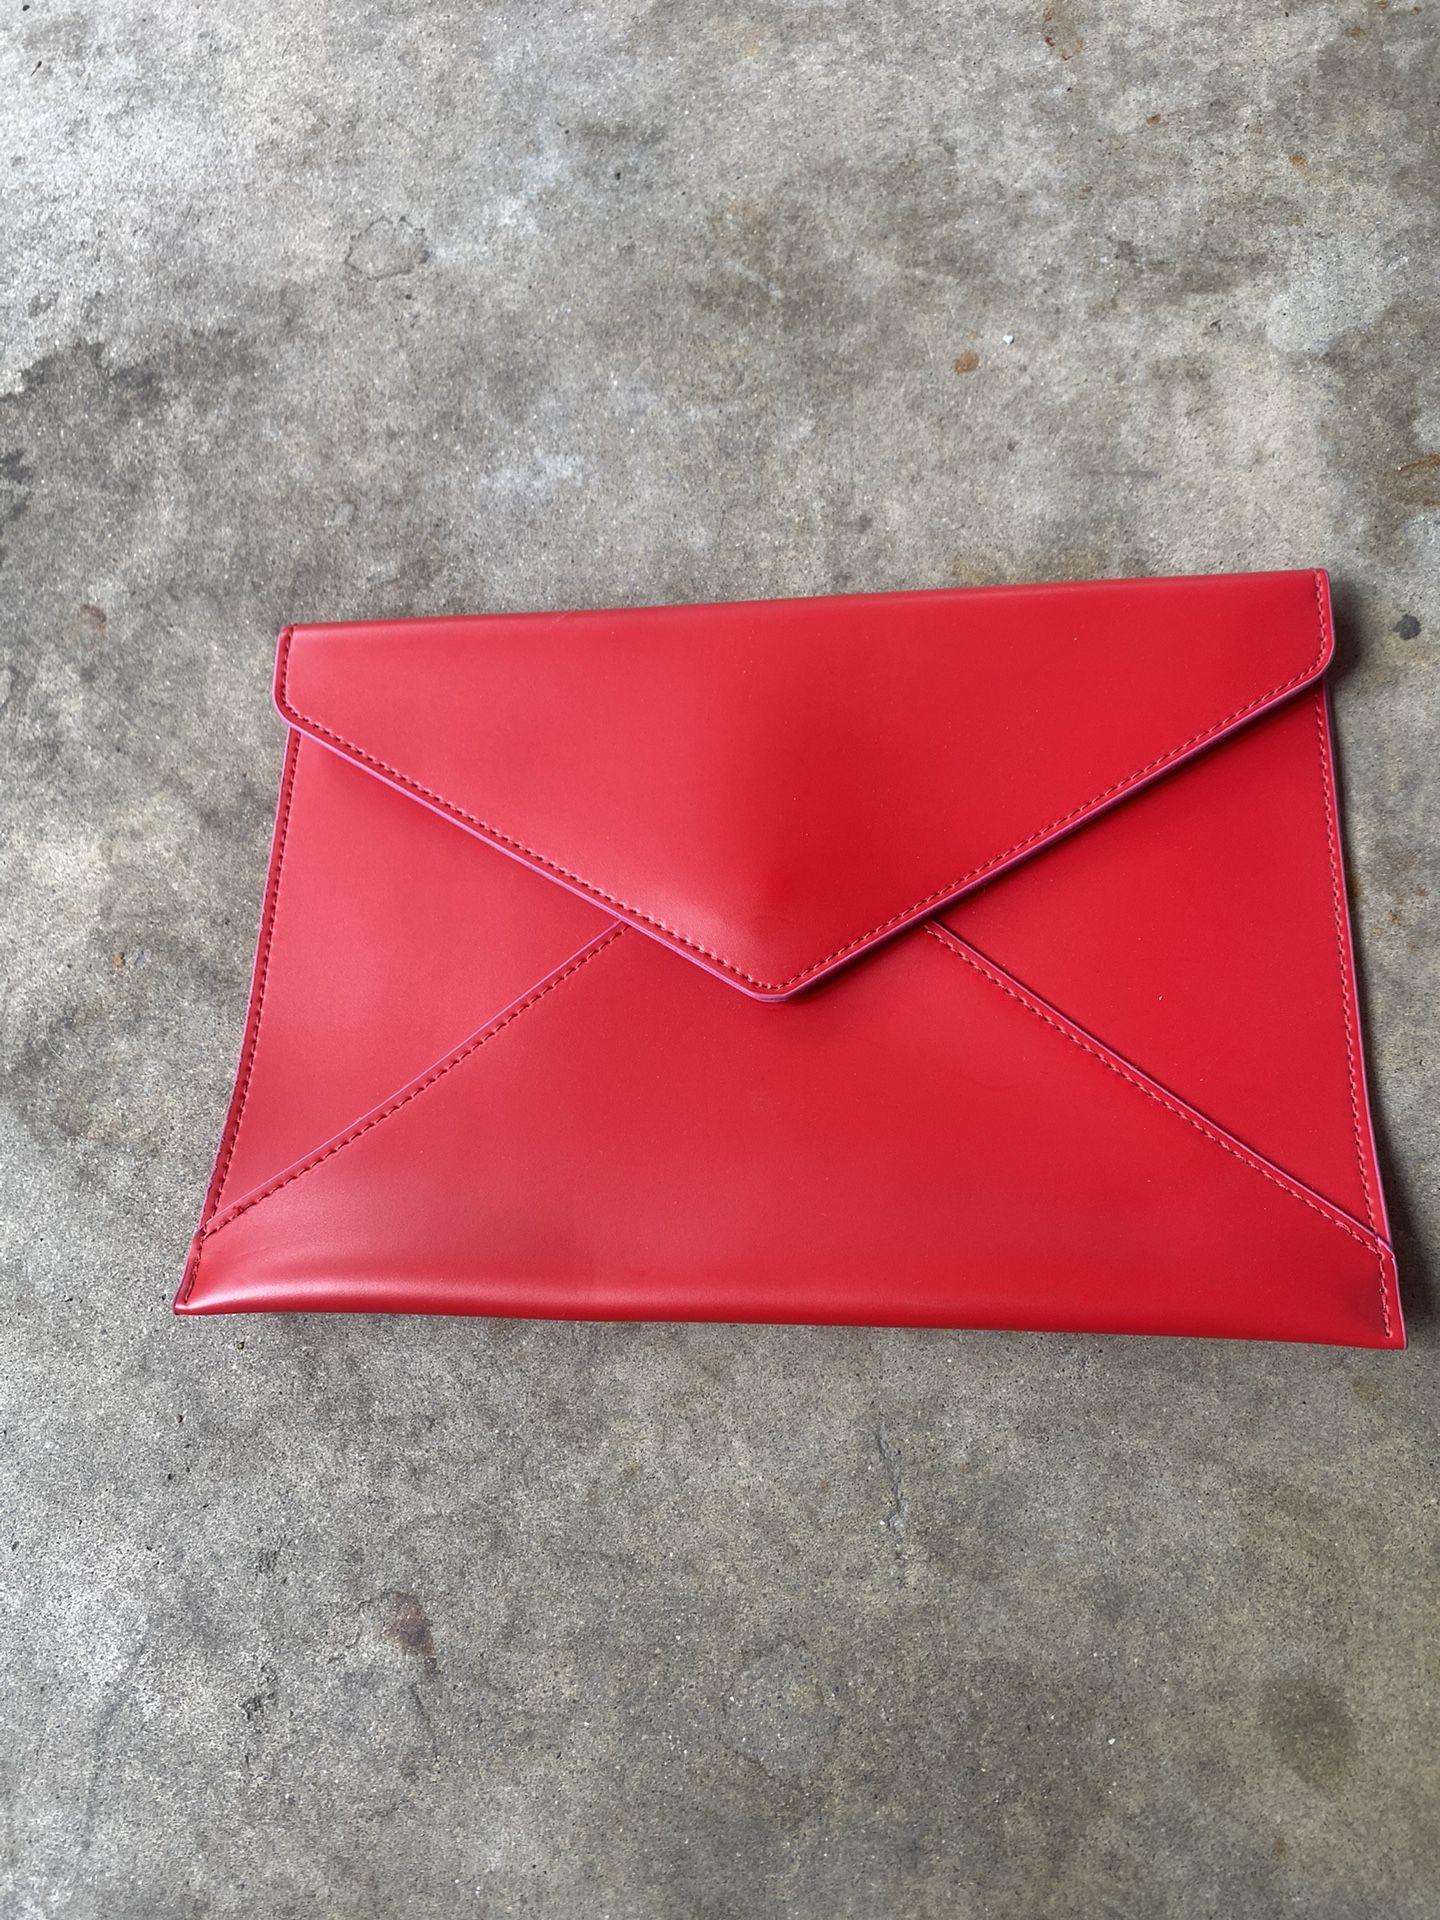 Elizabeth Arden Red Envelope Clutch